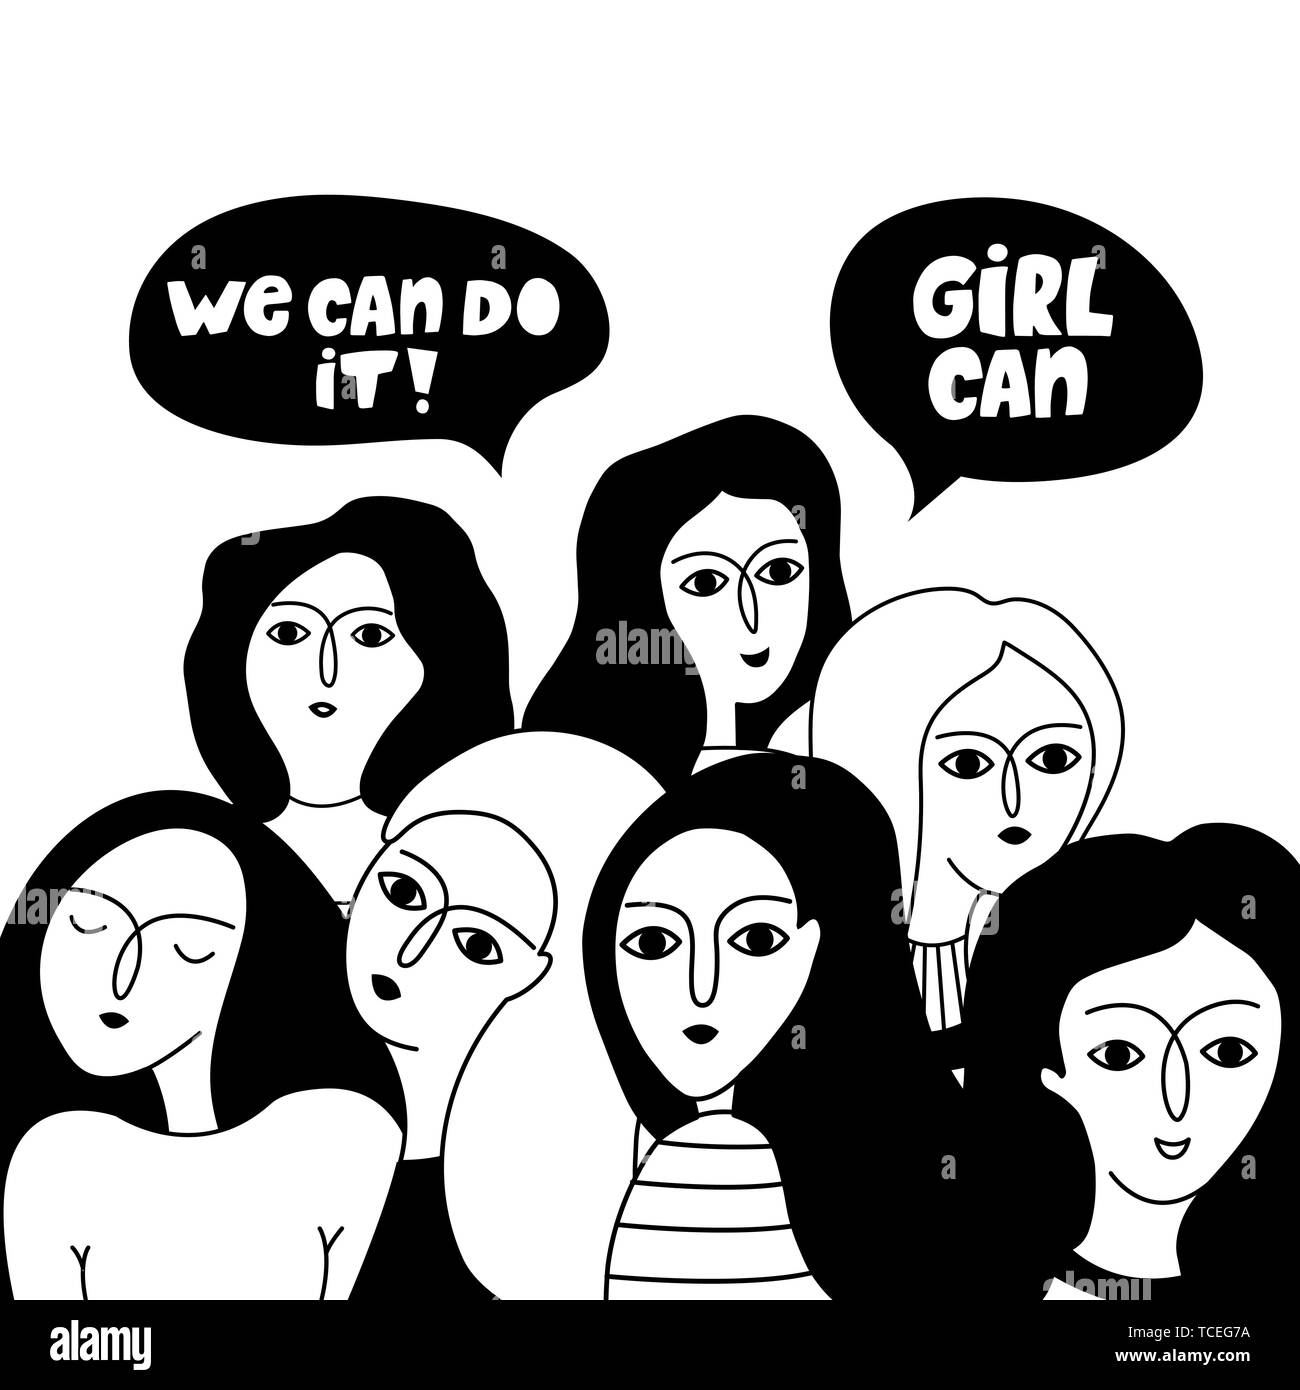 Grußkarte mit einer Gruppe von Mädchen und motivierende Parolen. Feminismus. Internationaler Tag der Frau! Vector Illustration. Stock Vektor